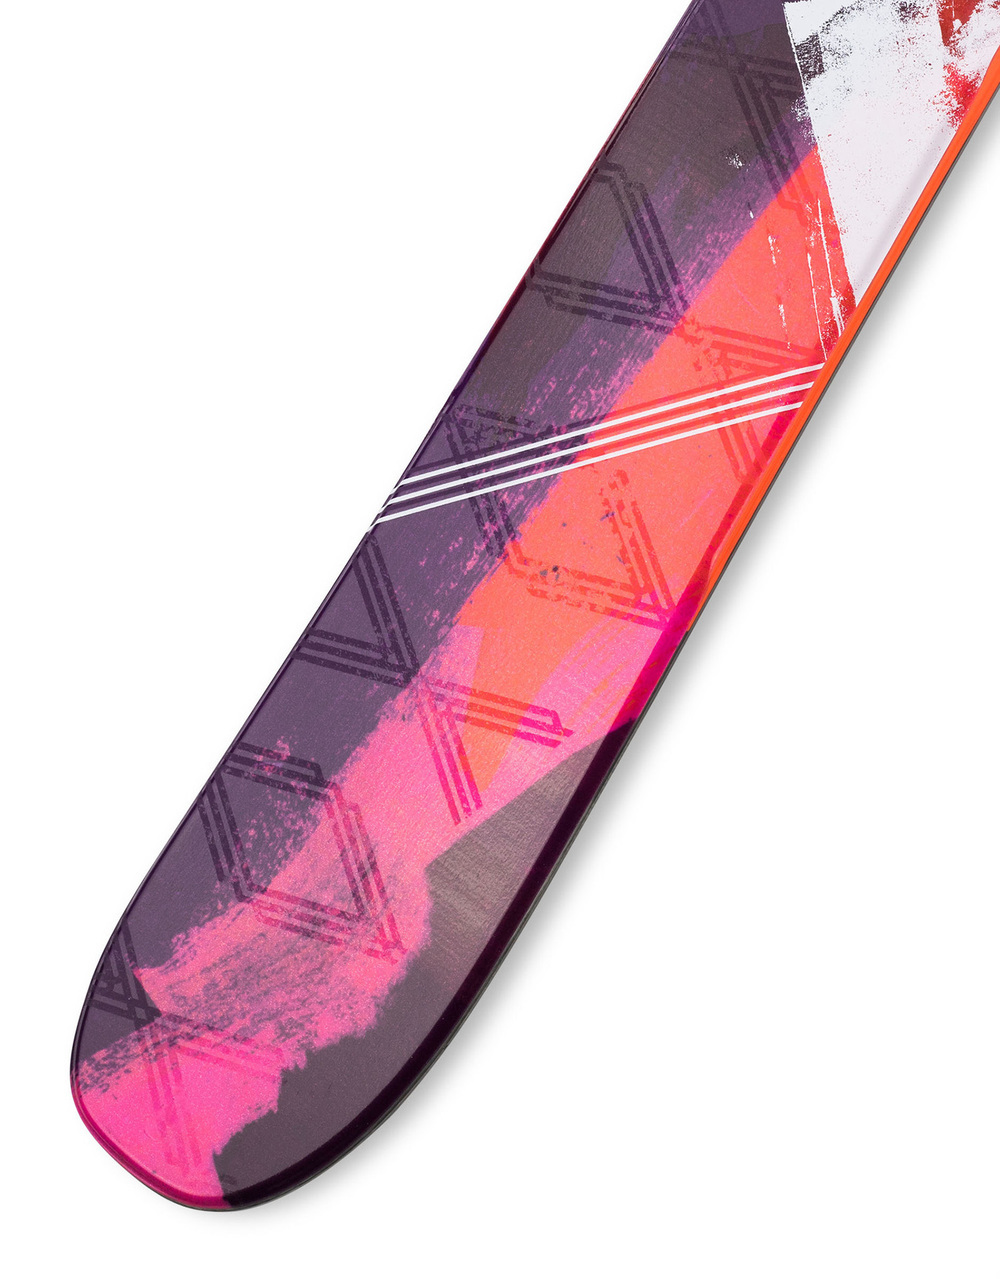 skis illustraiton abstract painterly snowboard